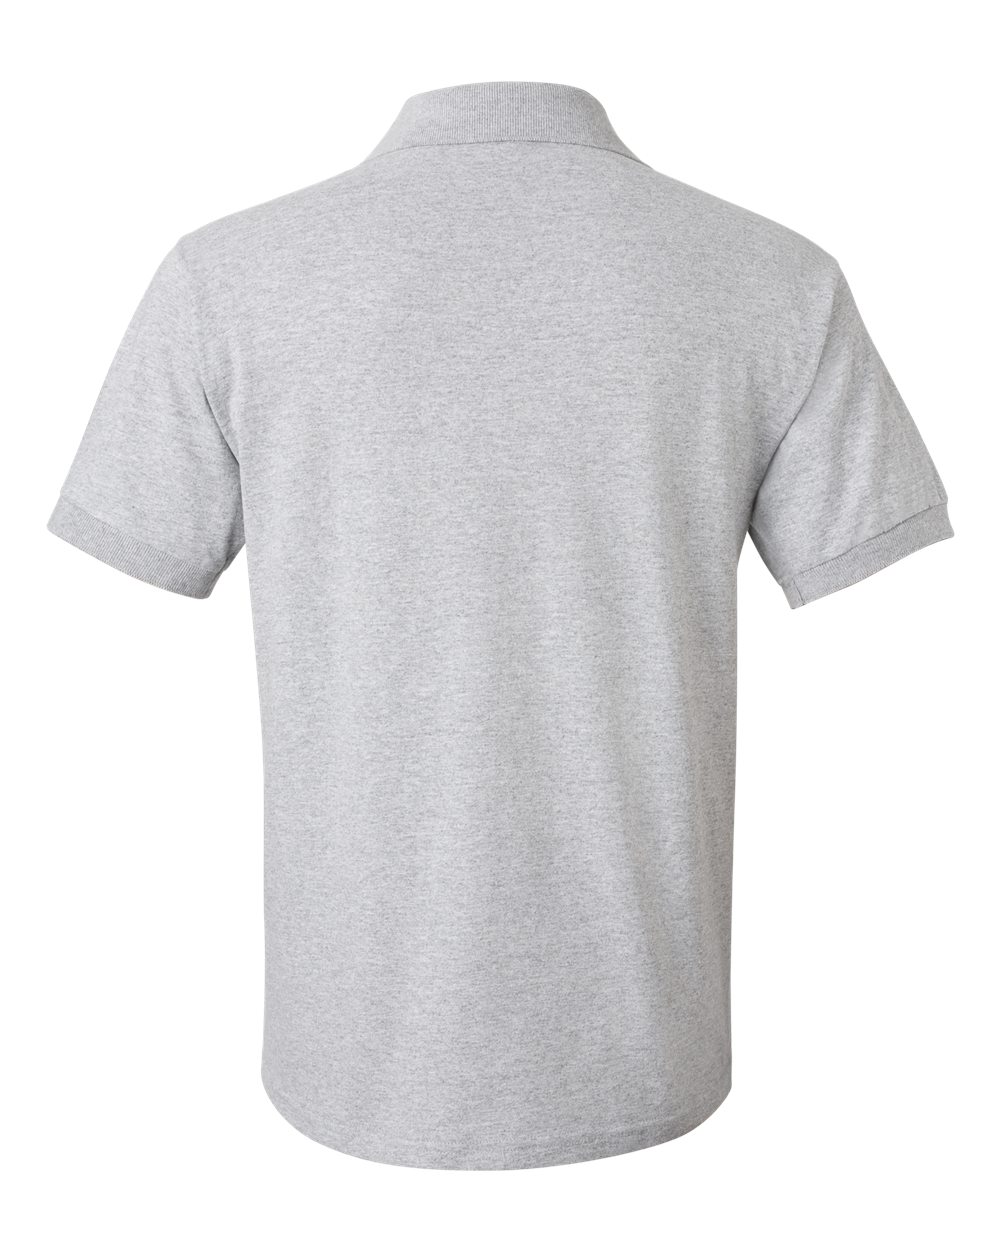 Gildan Mens Blank Polo Ultra Cotton Jersey Sport Shirt 2800 up to 2XL ...